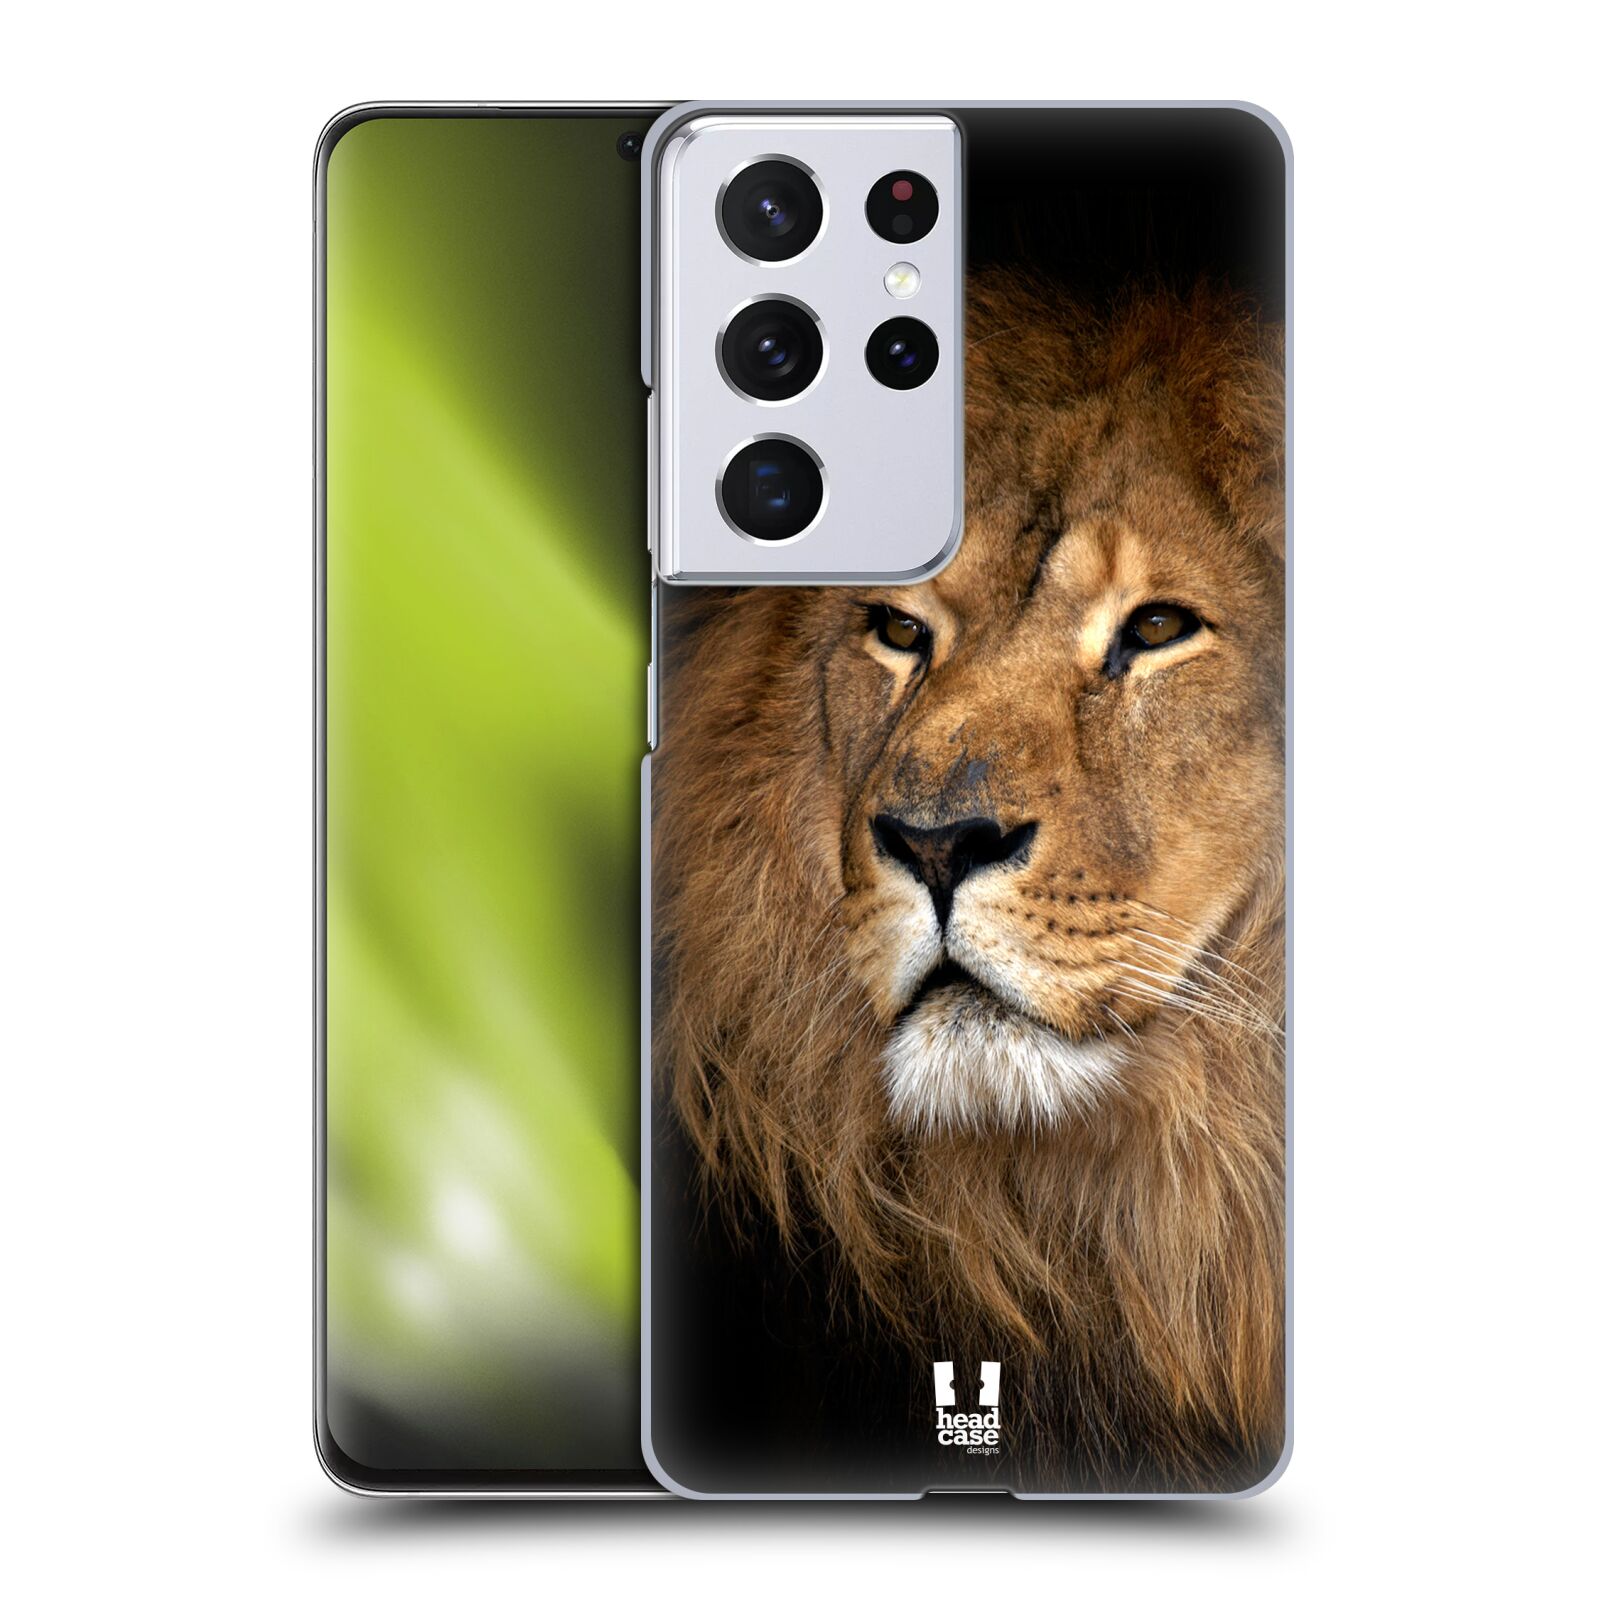 Zadní obal pro mobil Samsung Galaxy S21 ULTRA 5G - HEAD CASE - Svět zvířat král zvířat Lev